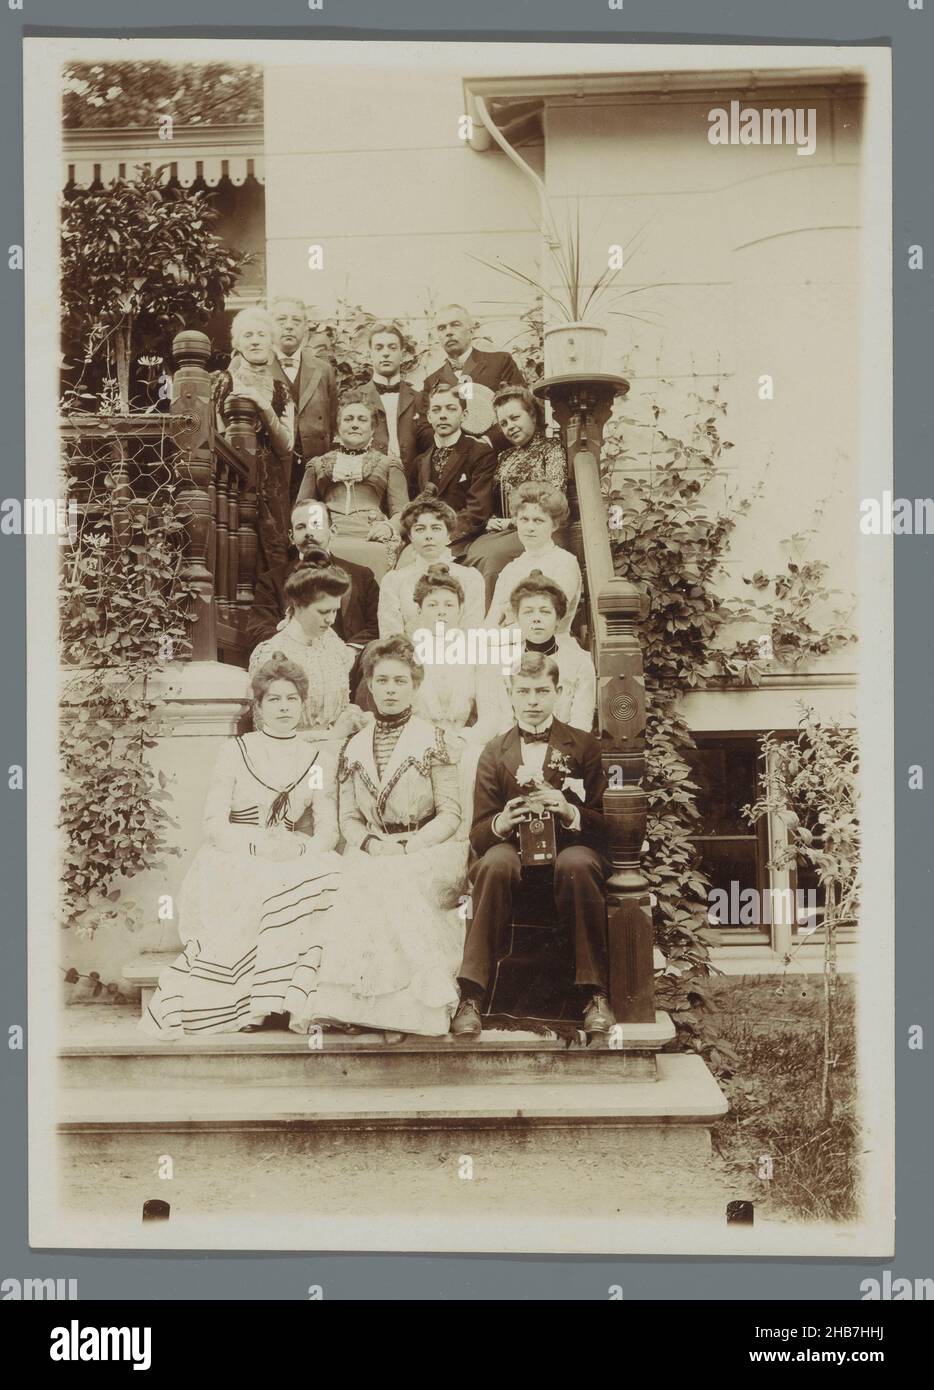 Ritratto di gruppo della famiglia Geertsema con Karel van den Berg seduto sulle scale dietro la casa, giovane uomo con macchina fotografica di fronte a destra, A.C.M. Geertsema, (cerchio di), Paesi Bassi, c.. 1895 - c. 1905, supporto fotografico, drager, :, altezza 176 mm x larghezza 126 mm Foto Stock